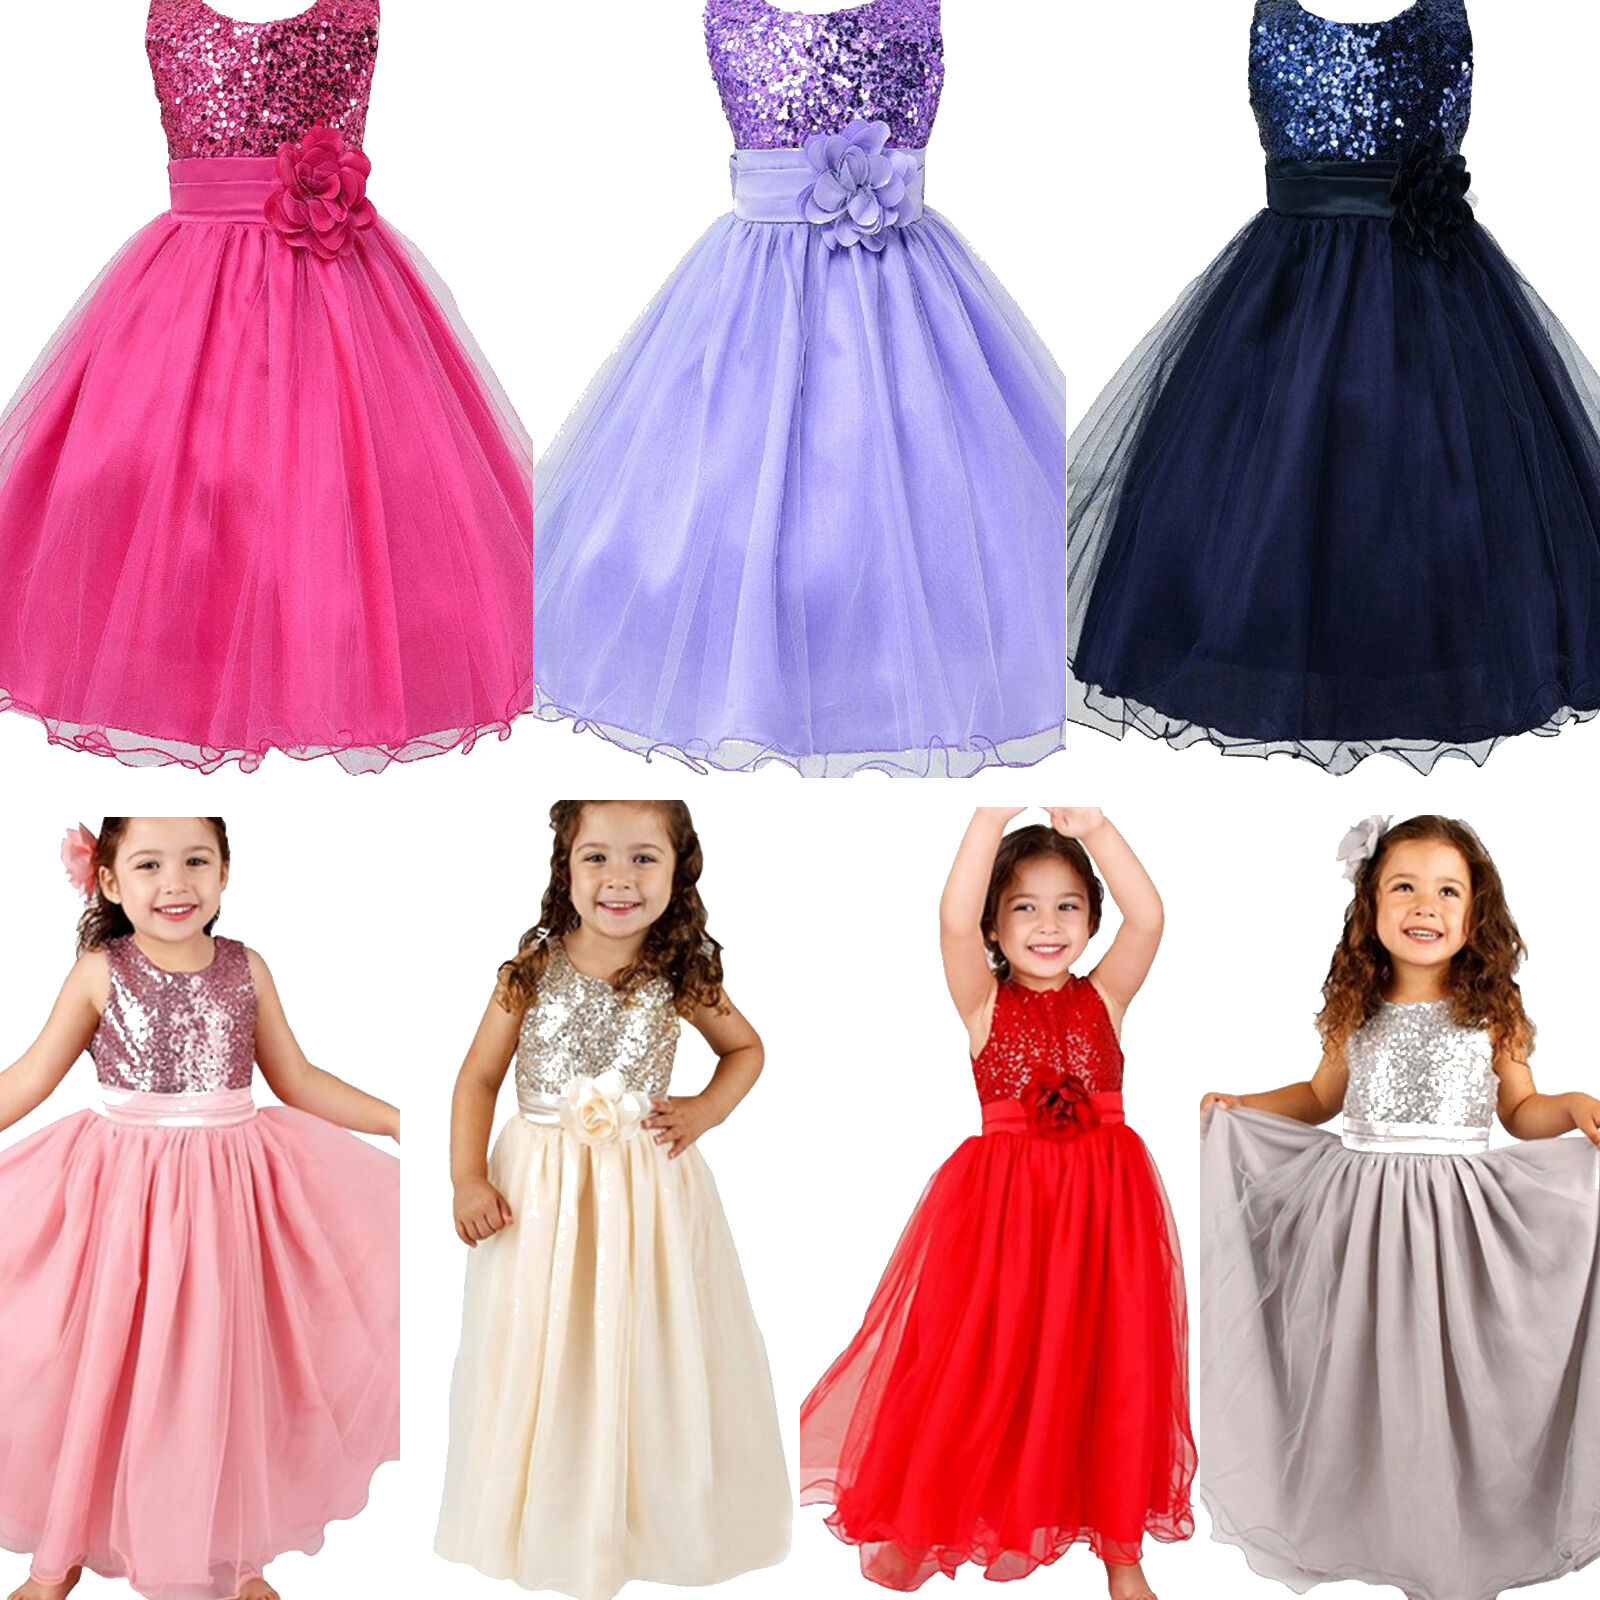 Mädchen Kinder Festkleid Party Paillette Prinzessin Hochzeit Blumenmädchen Kleid 